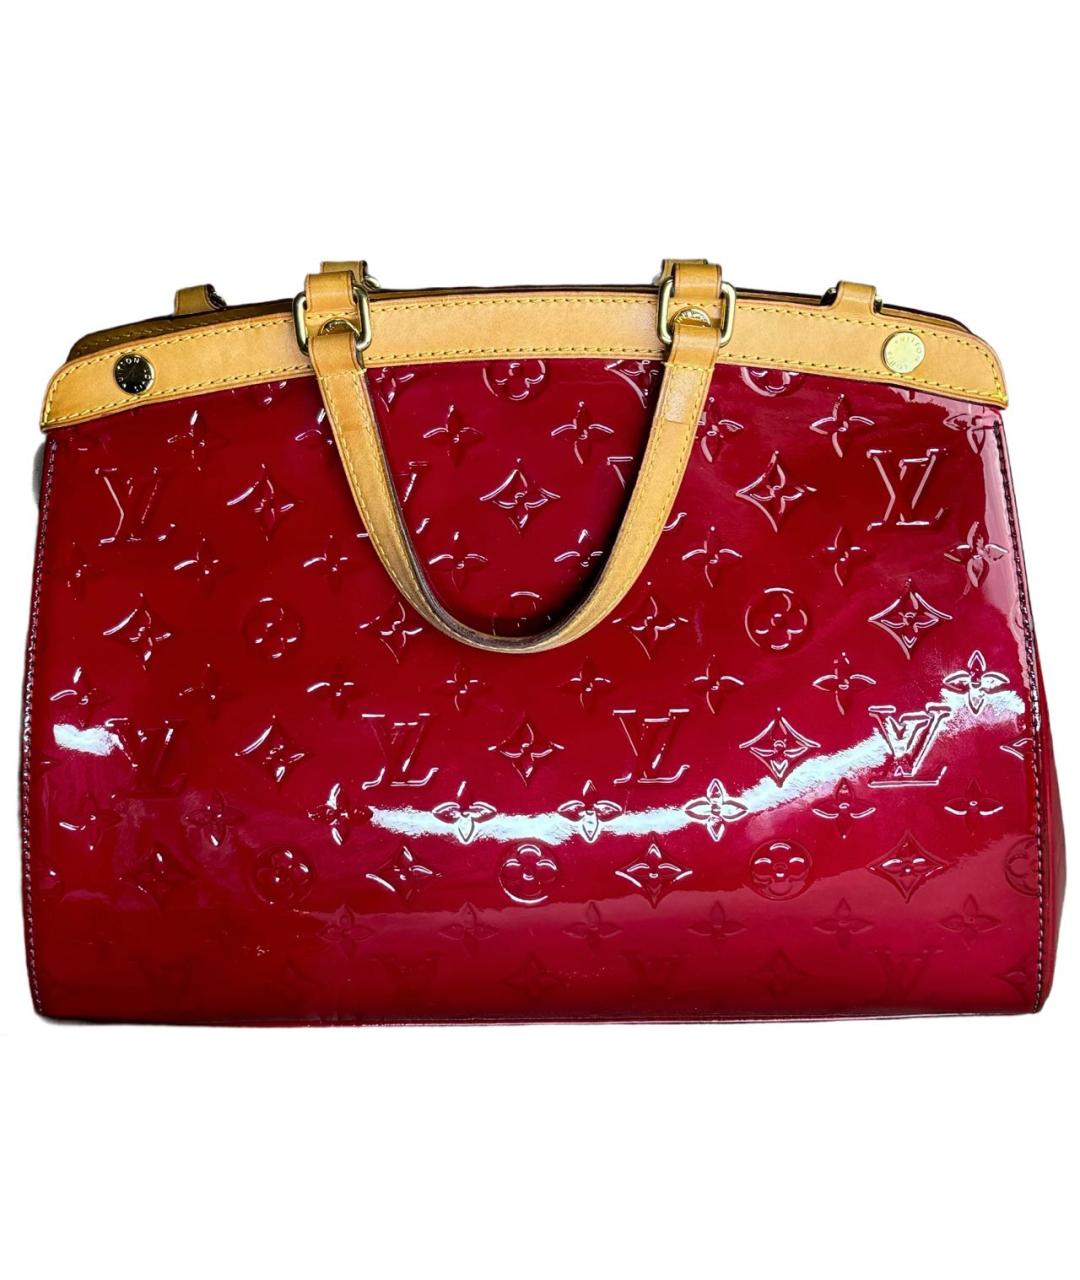 LOUIS VUITTON PRE-OWNED Красная сумка через плечо из лакированной кожи, фото 1